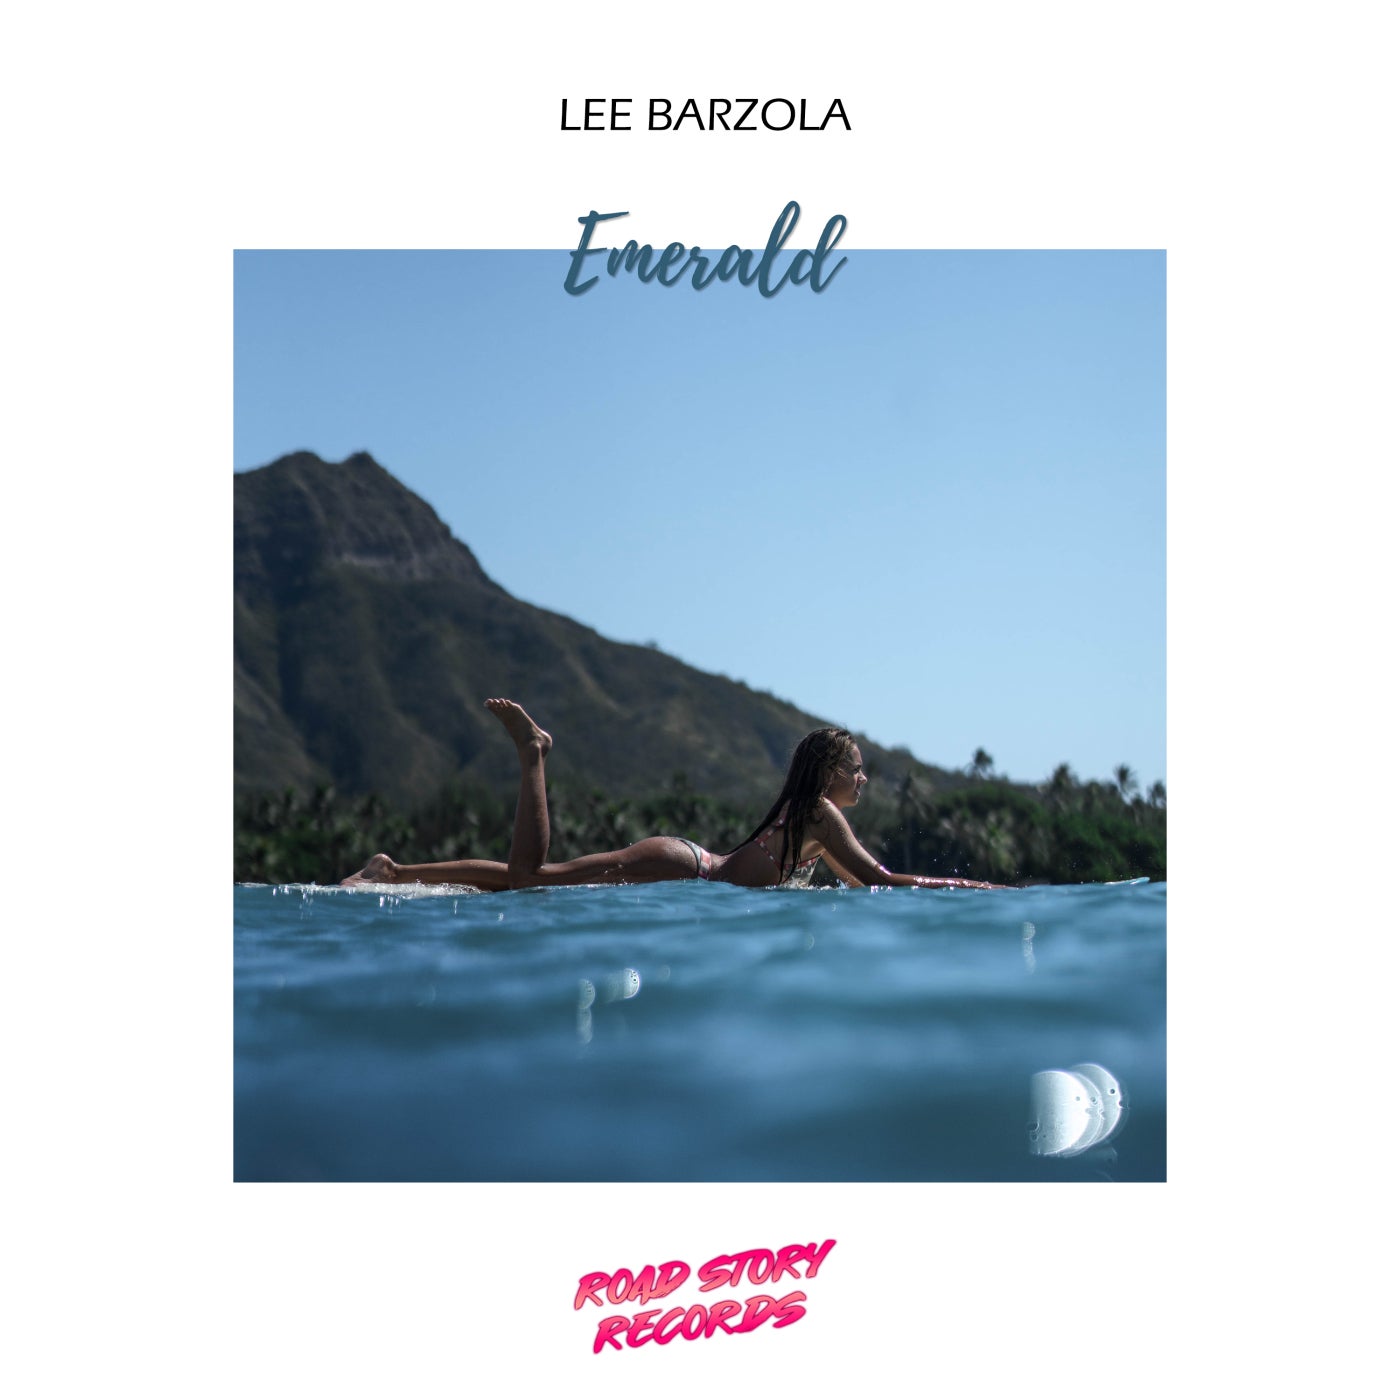 Lee Barzola - Emerald (Original Mix)